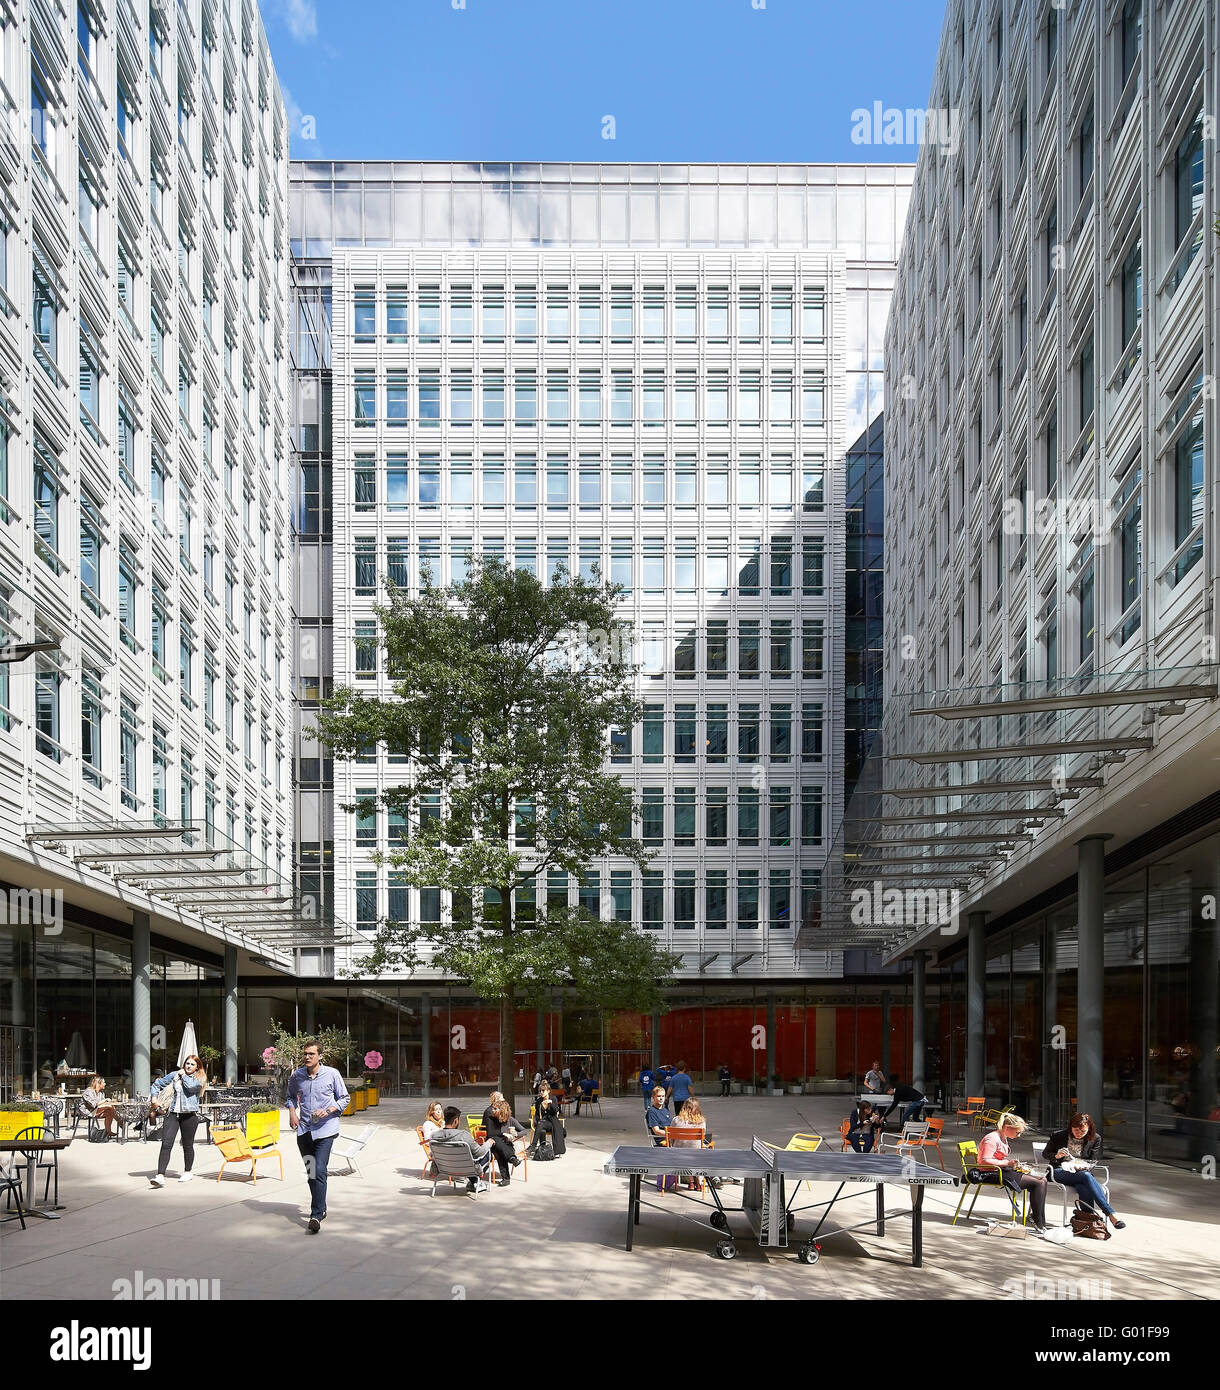 Patio público con asientos informales y zona de ocio. Central Saint Giles, Londres, Reino Unido. Arquitecto: Renzo Piano Building Workshop, 2015. Foto de stock